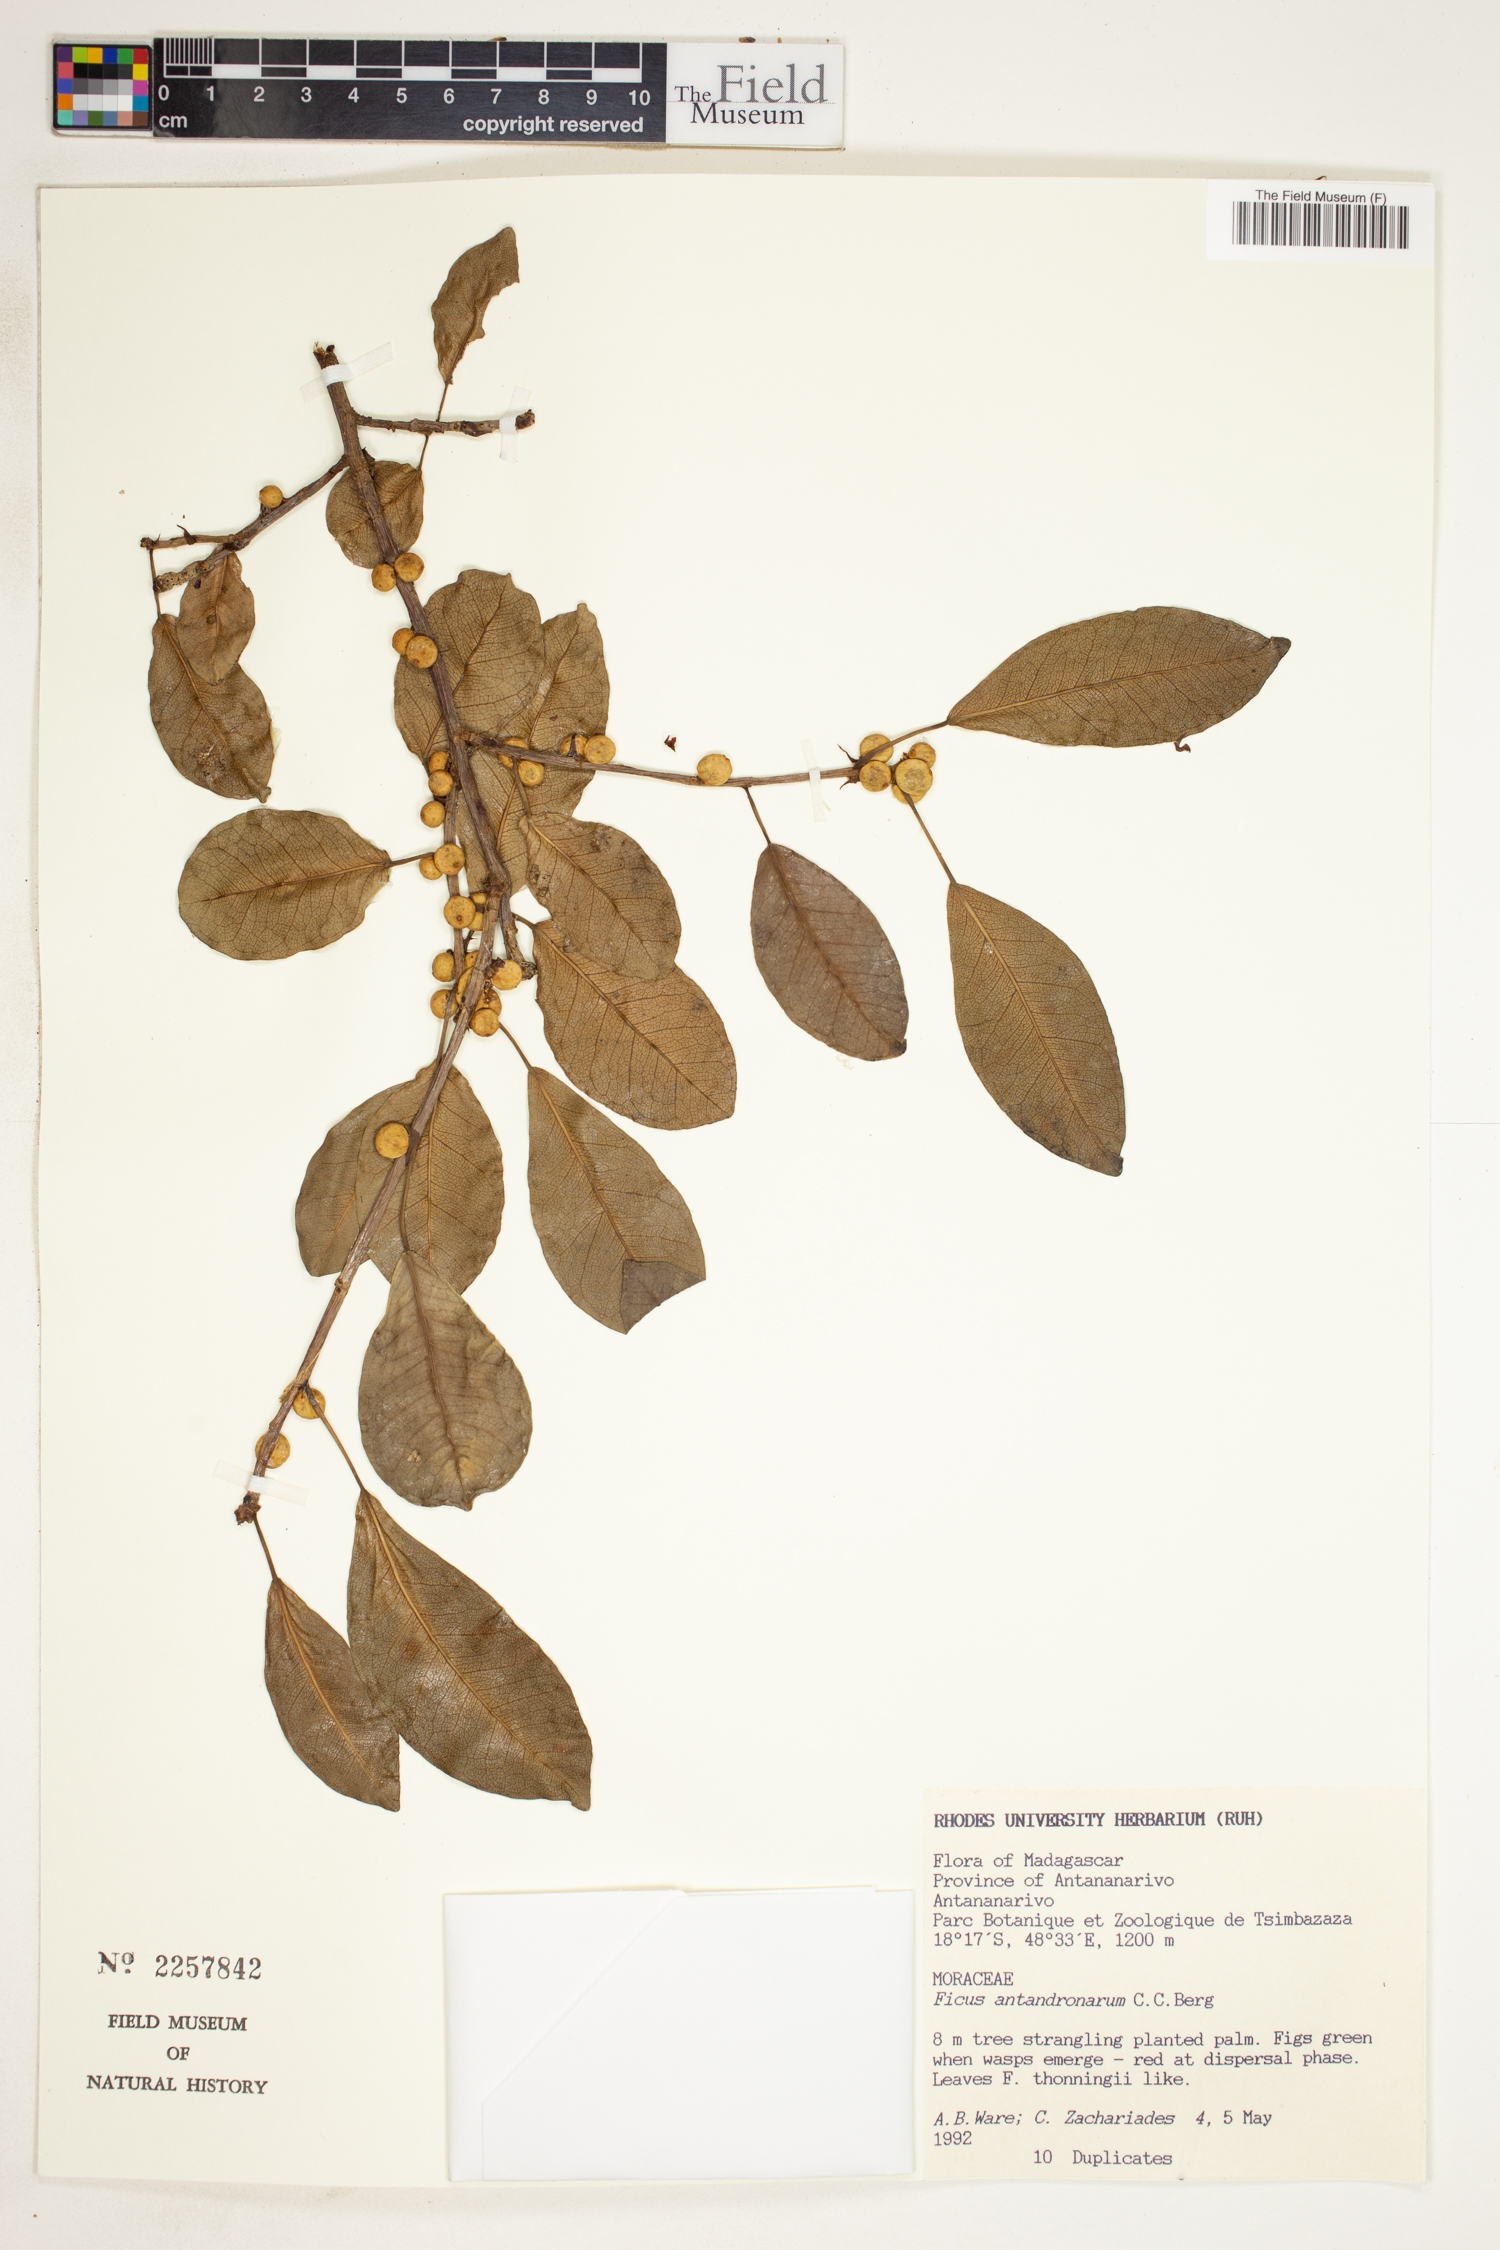 Ficus antandronarum image